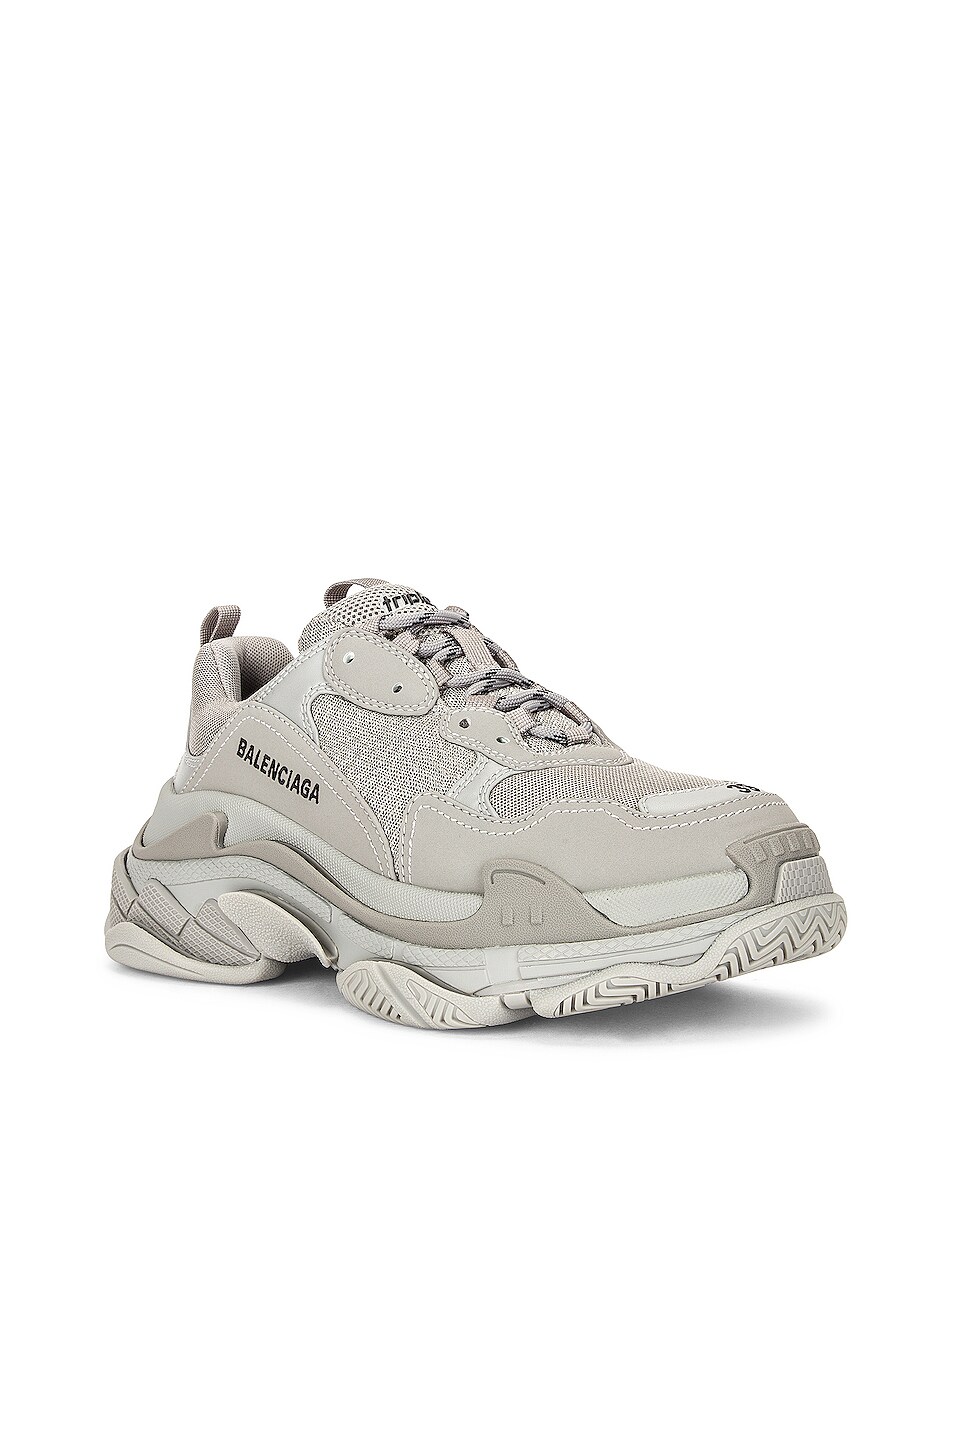 Balenciaga Triple S Sneakers in Balenciaga Grey | FWRD